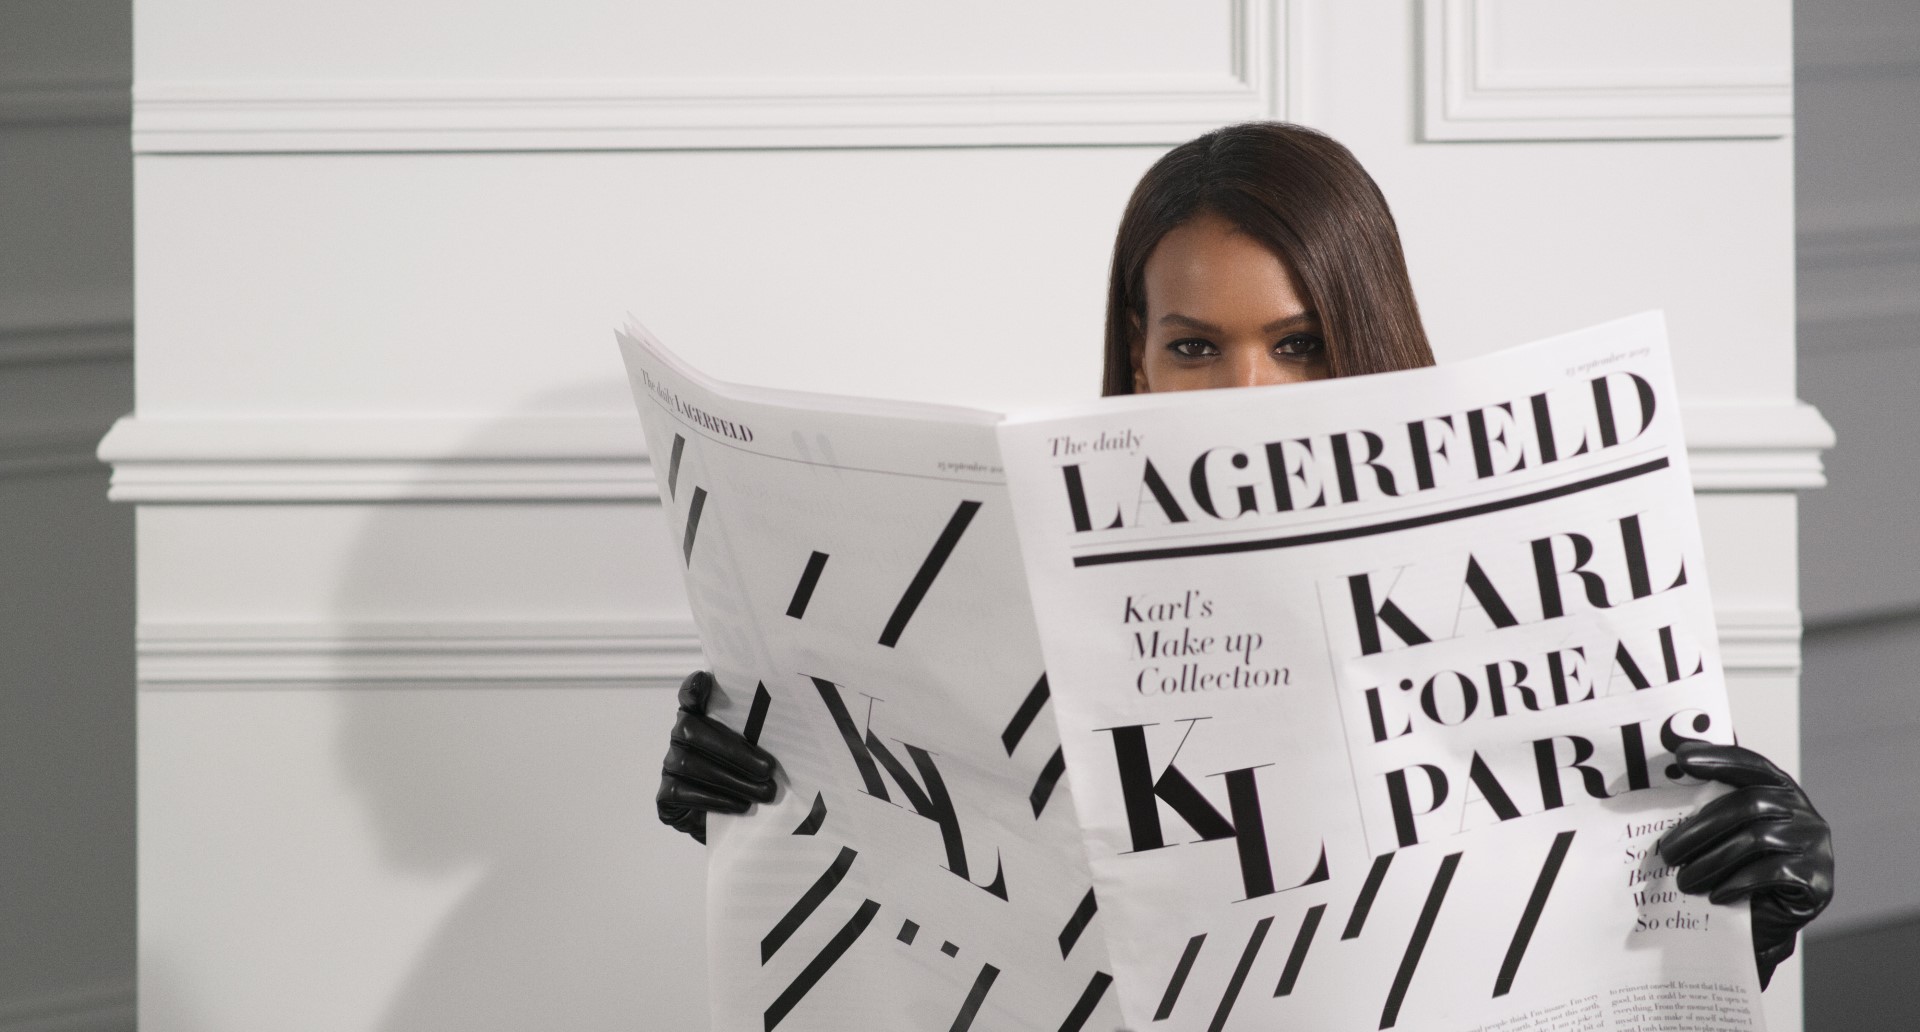 Πότε θα κυκλοφορήσει στην Ελλάδα η συλλογή μακιγιάζ του Karl Lagerfeld με την L’Oreal Paris!